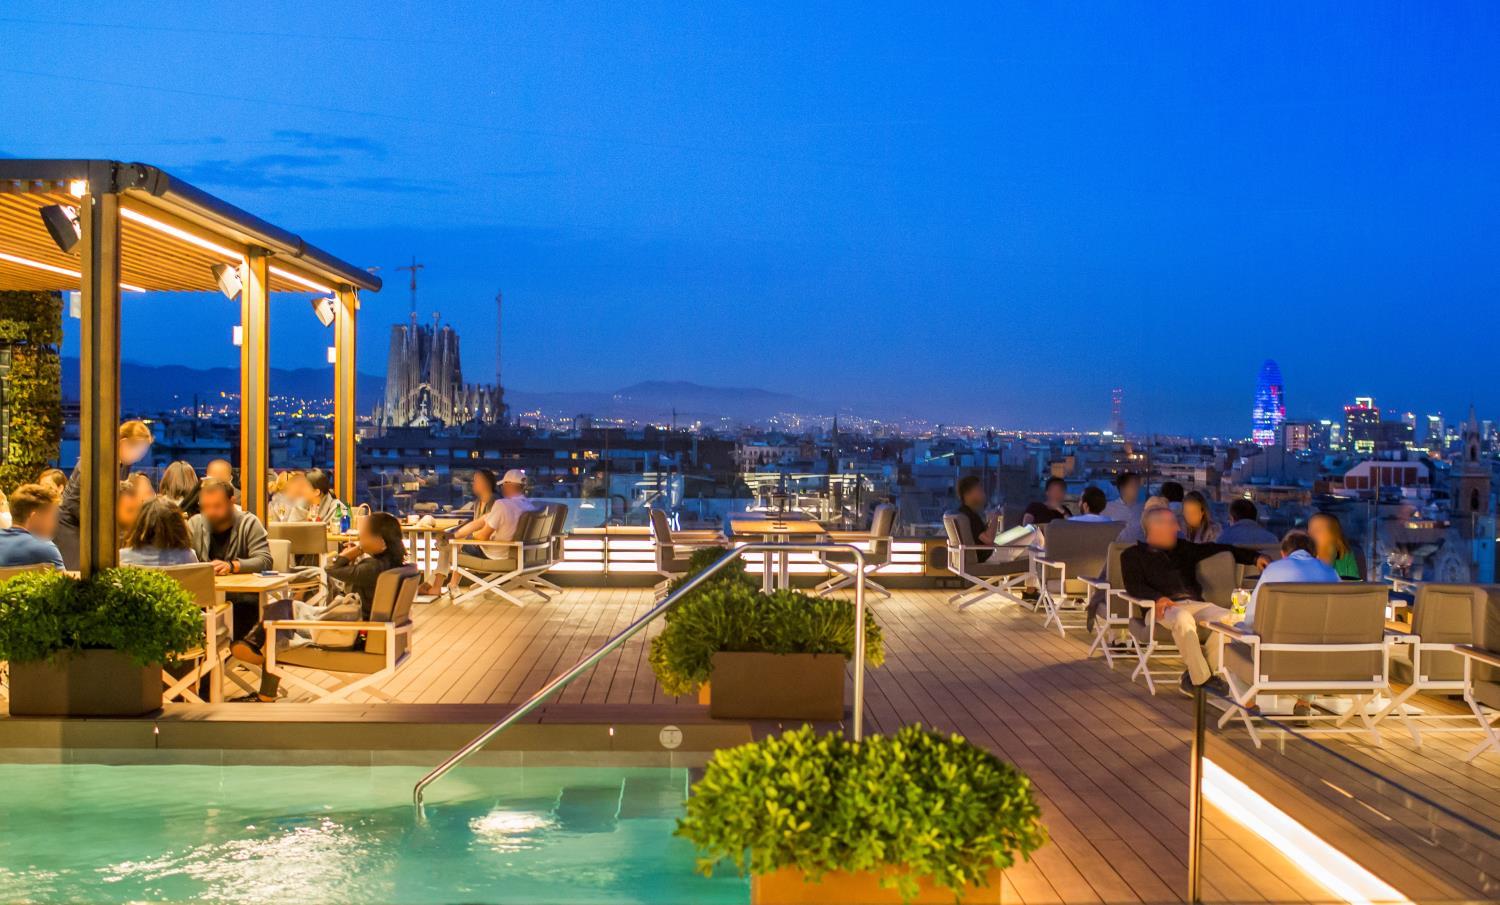 Посетите La Dolce Vitae, изысканную террасу на крыше культового барселонского отеля Majestic Hotel & Spa.